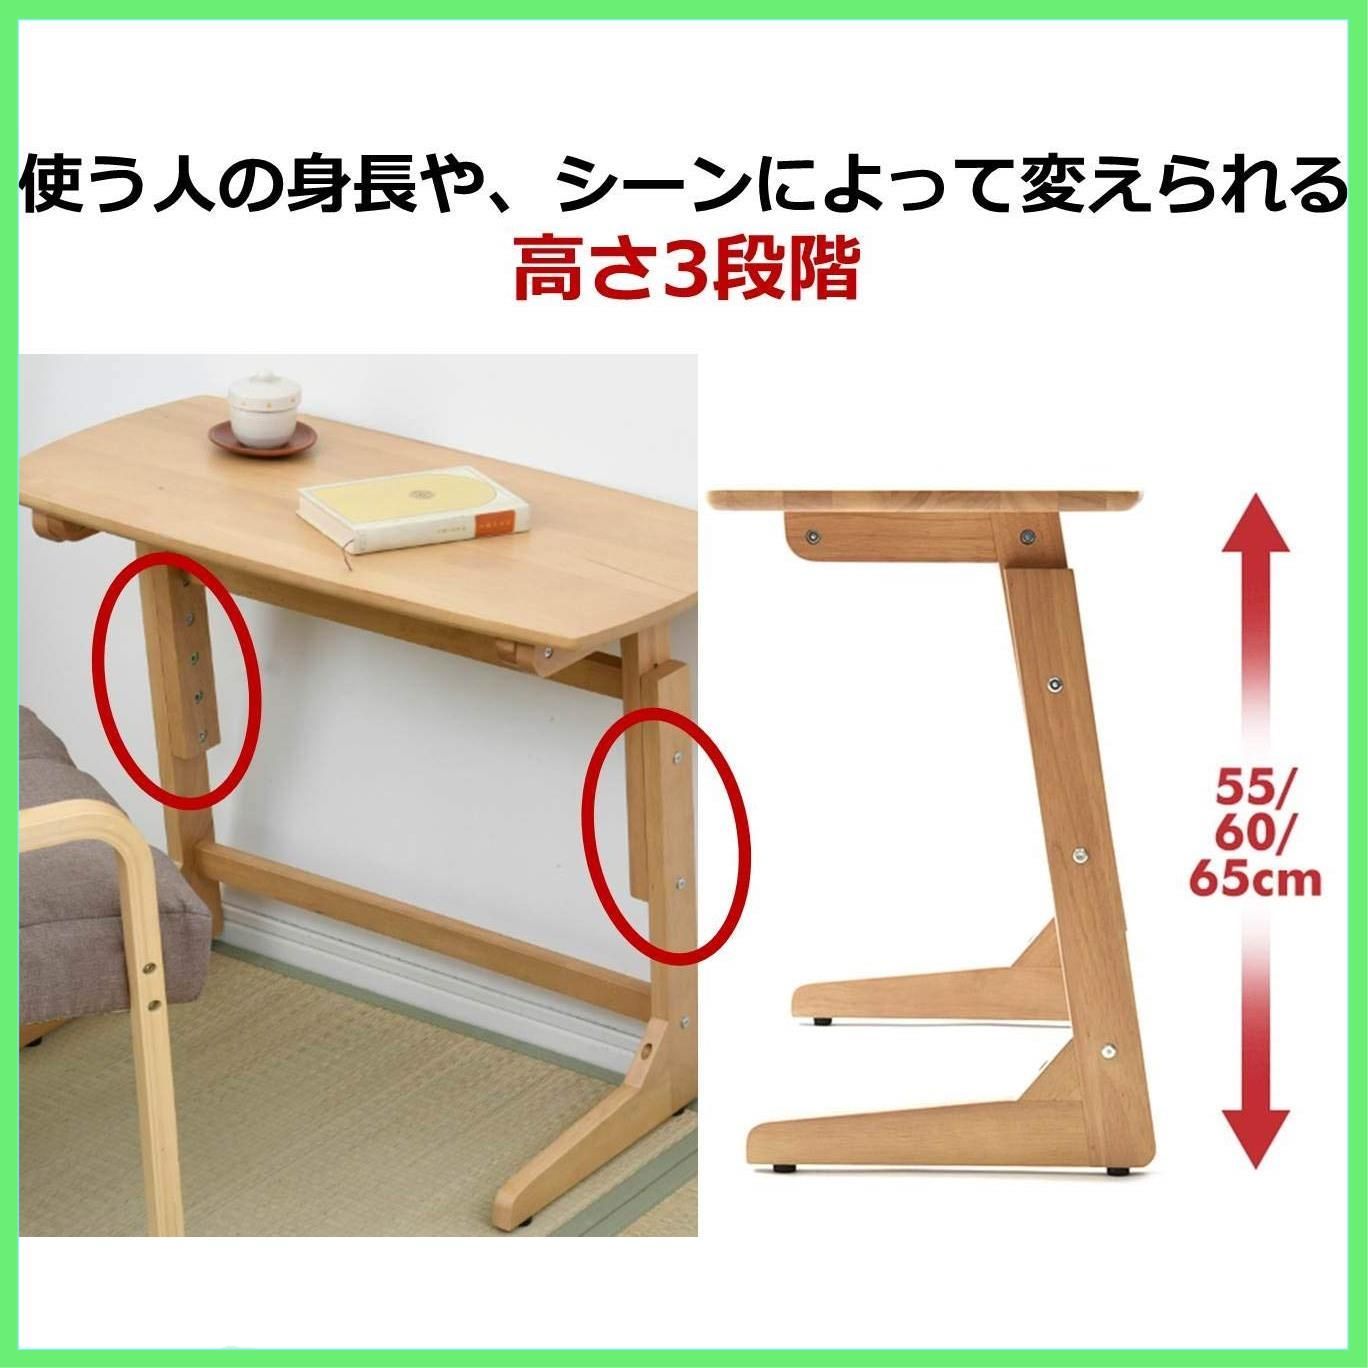 ◇山善 昇降 テーブル 高さ3段階調整 頑丈(耐荷重20㎏) アジャスター付